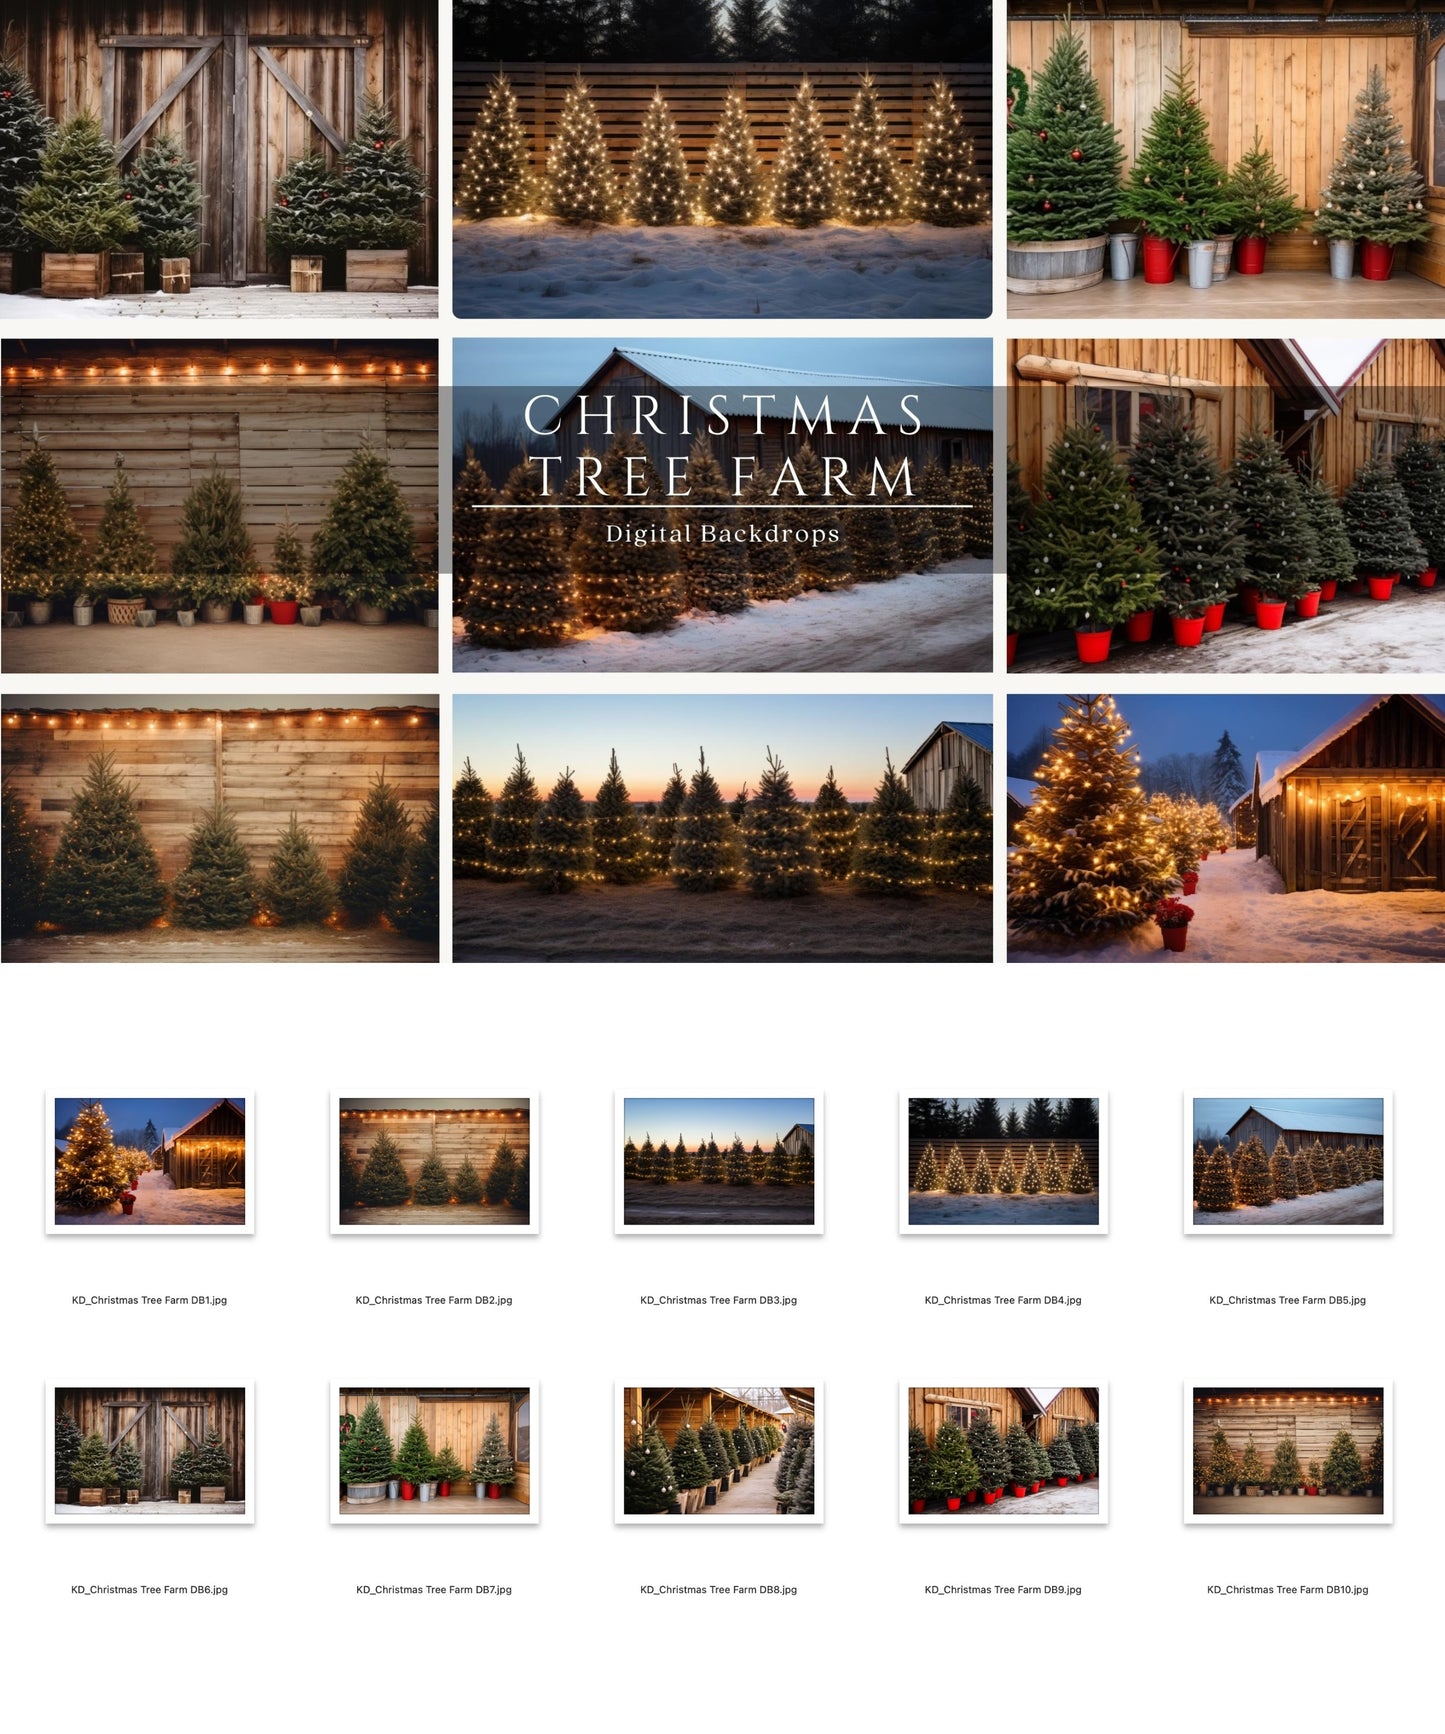 Christmas Tree Farm Digital Backdrops